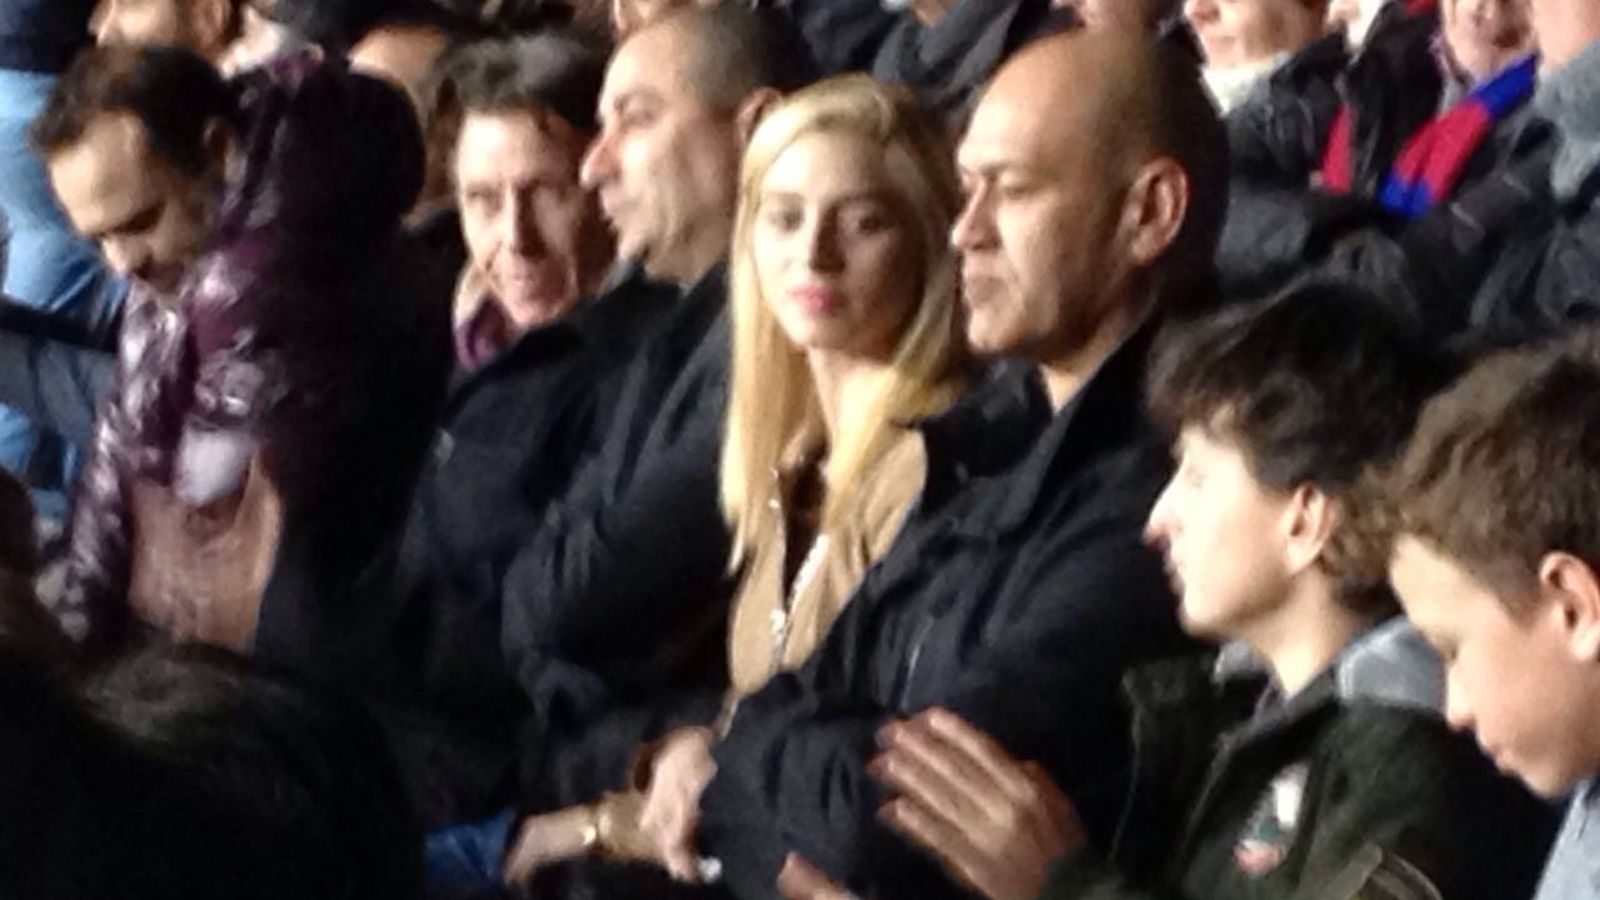 Foto: Palco del Camp Nou. A la derecha de la mujer rubia, se sienta Jacky Ben-Zaken. Con la cabeza afeitada, a la izquierda de la rubia, está Morris Moshe, testaferro de Jacky Ben-Zaken en España.